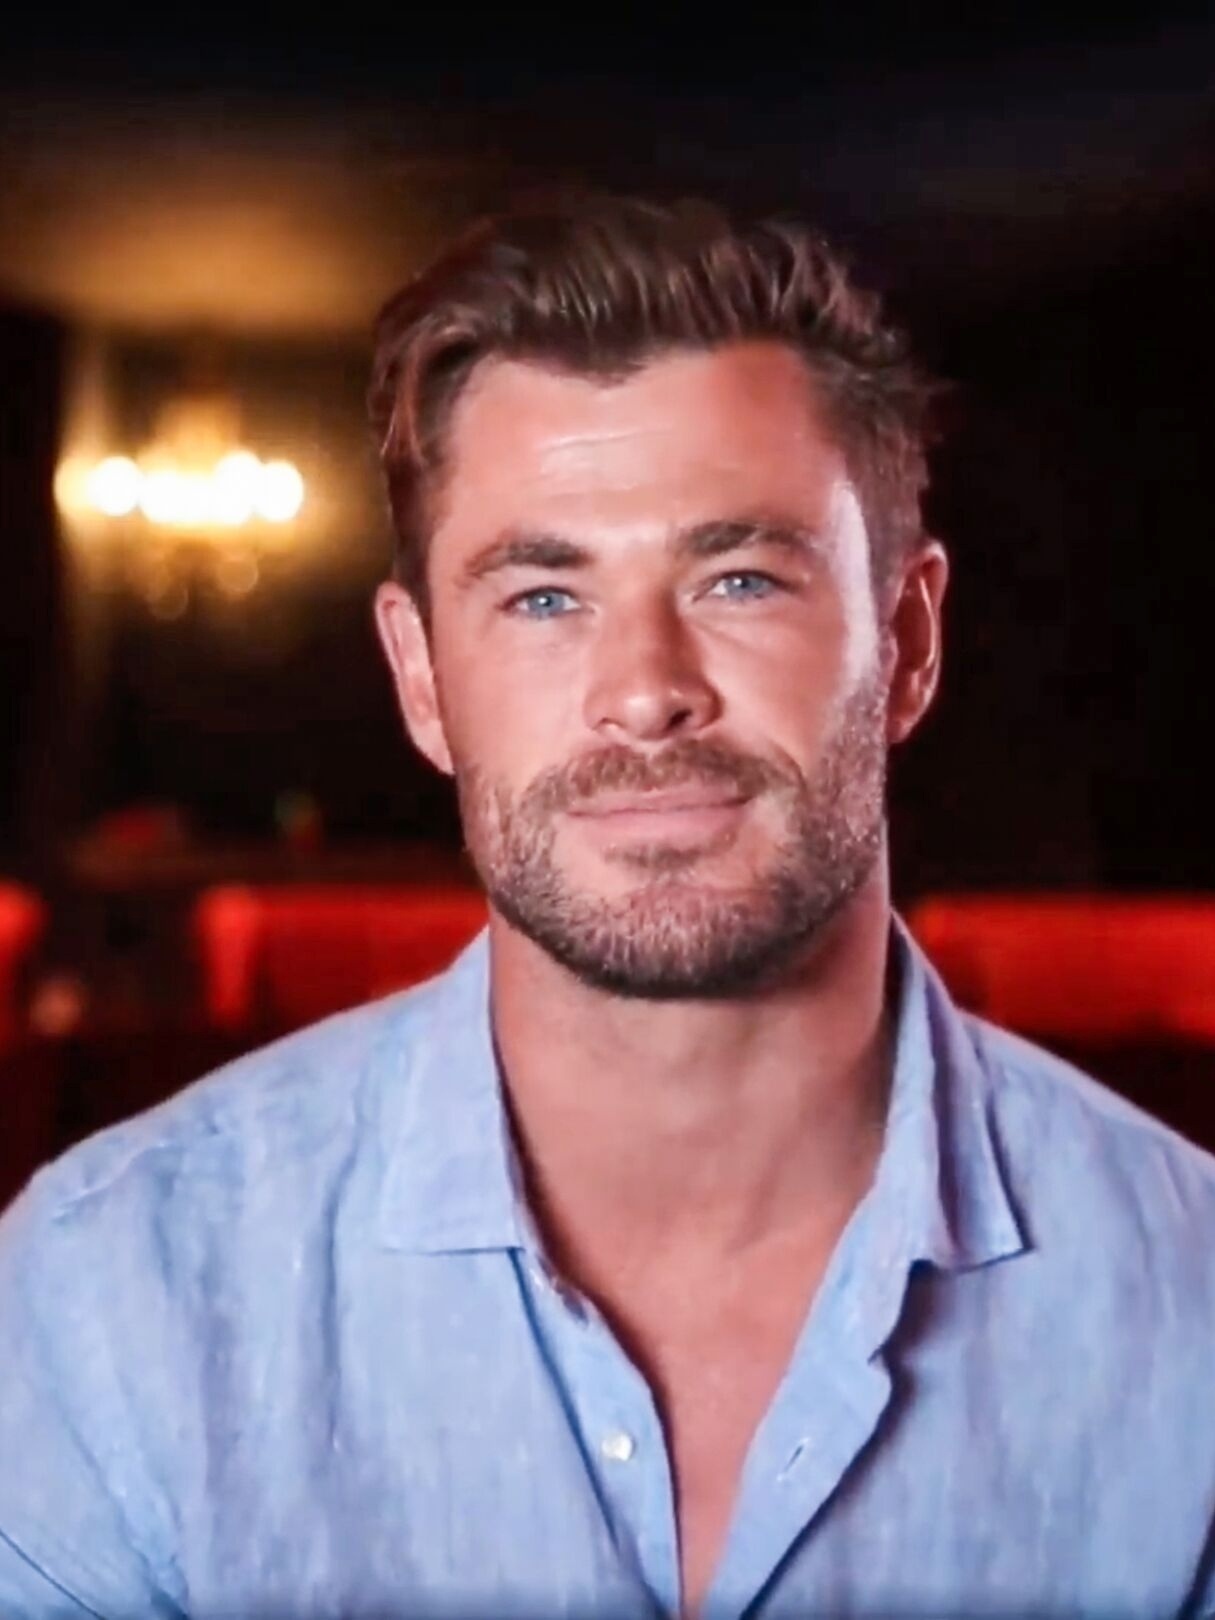 Morte de um herói; Chris Hemsworth abre o jogo e revela que planeja se  despedir de Thor em próximo filme